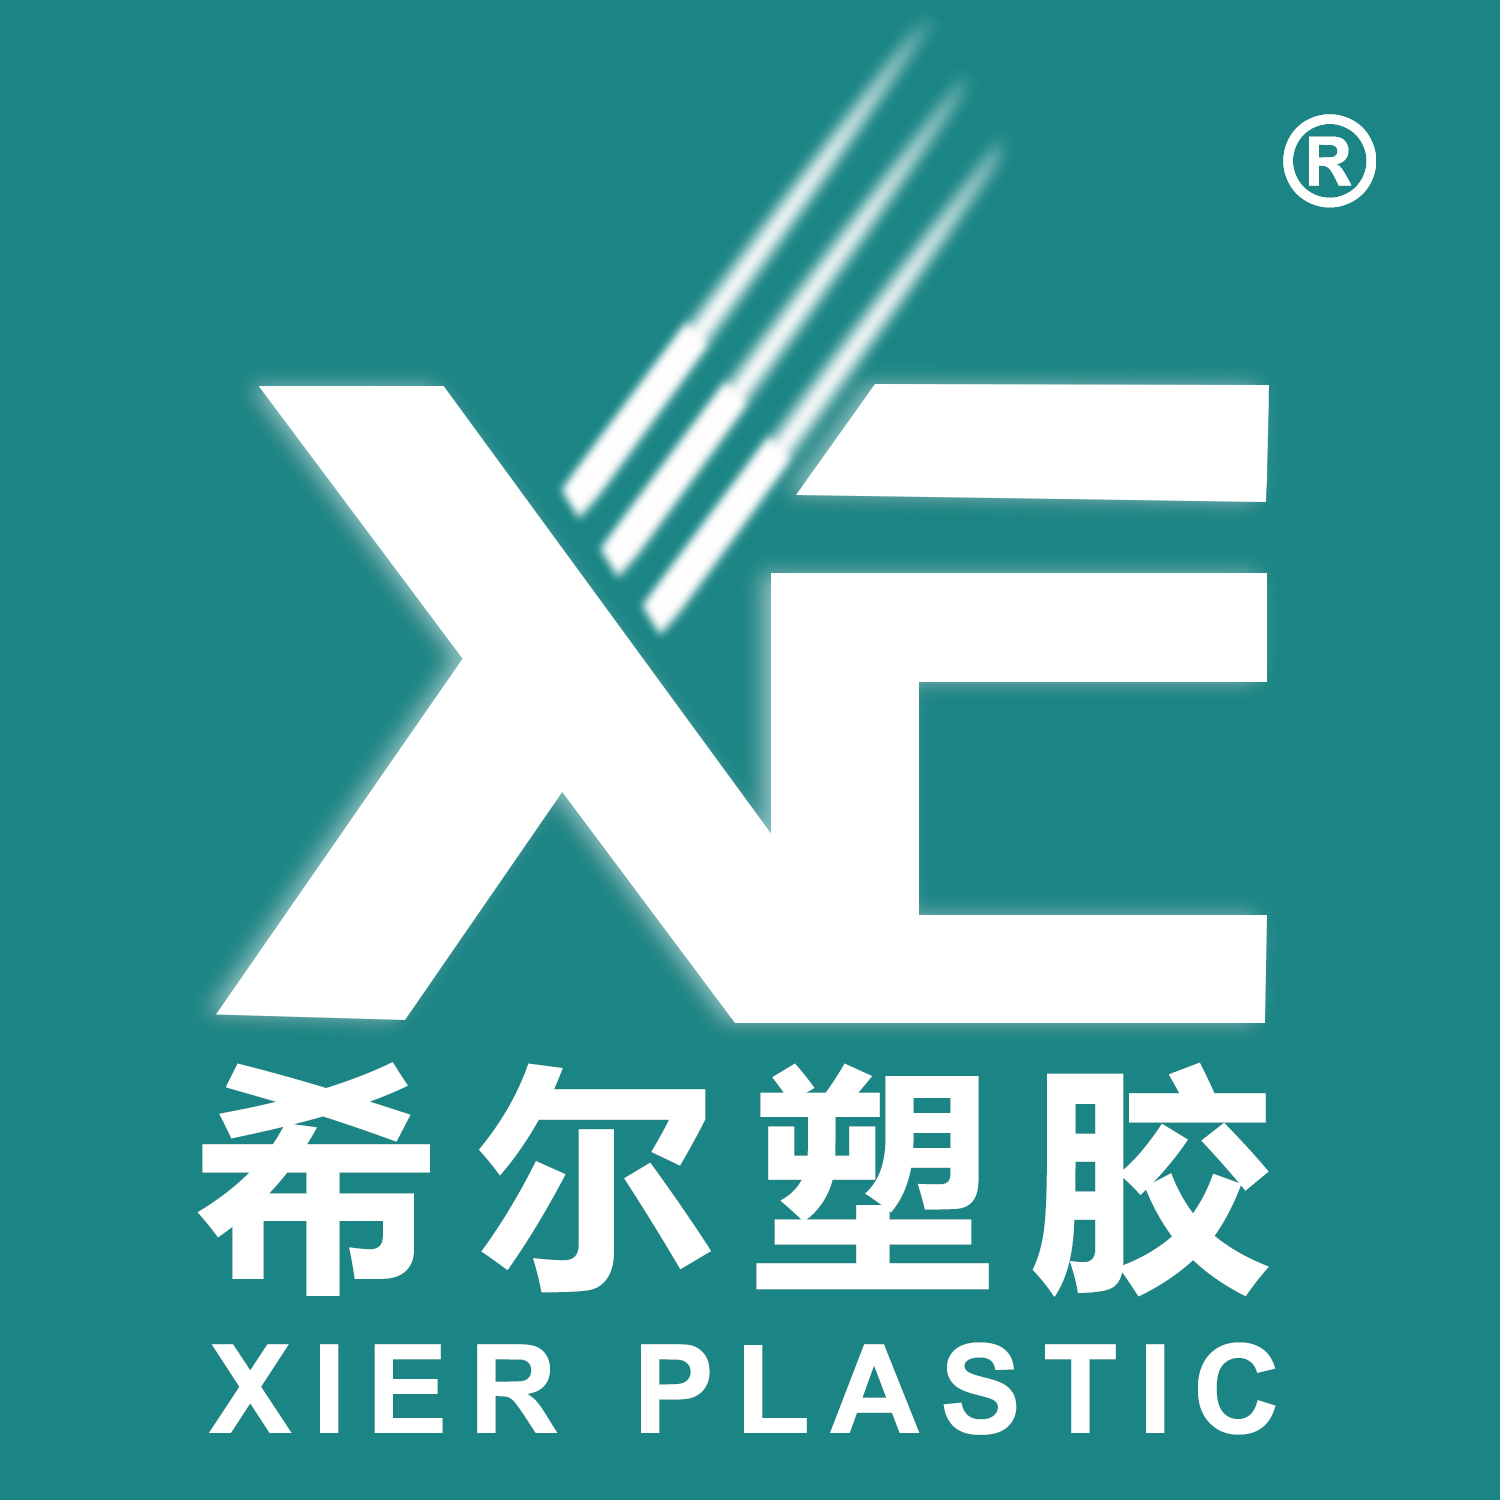 ZHEJIANG XIER PLASTIC VALVE LEAD CO., LTD